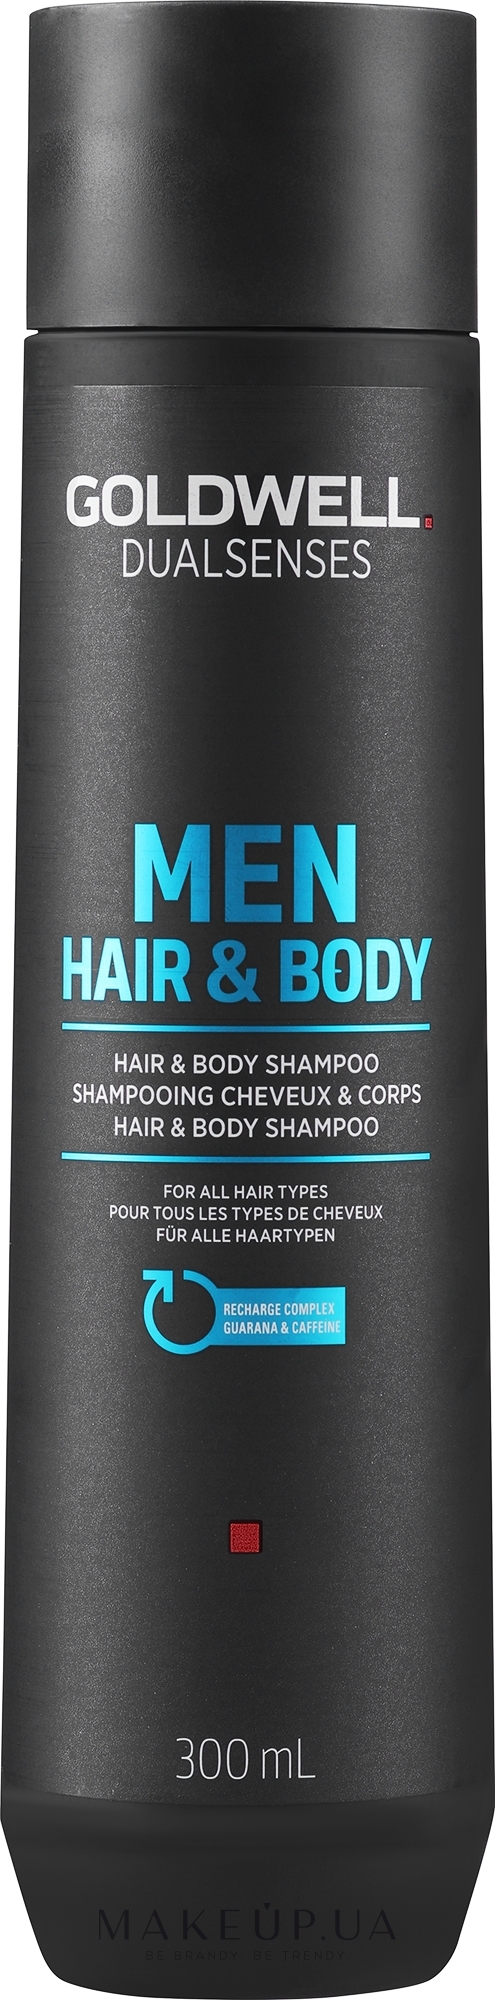 Освіжаючий шампунь для волосся та тіла - Goldwell DualSenses For Men Hair & Body Shampoo — фото 300ml